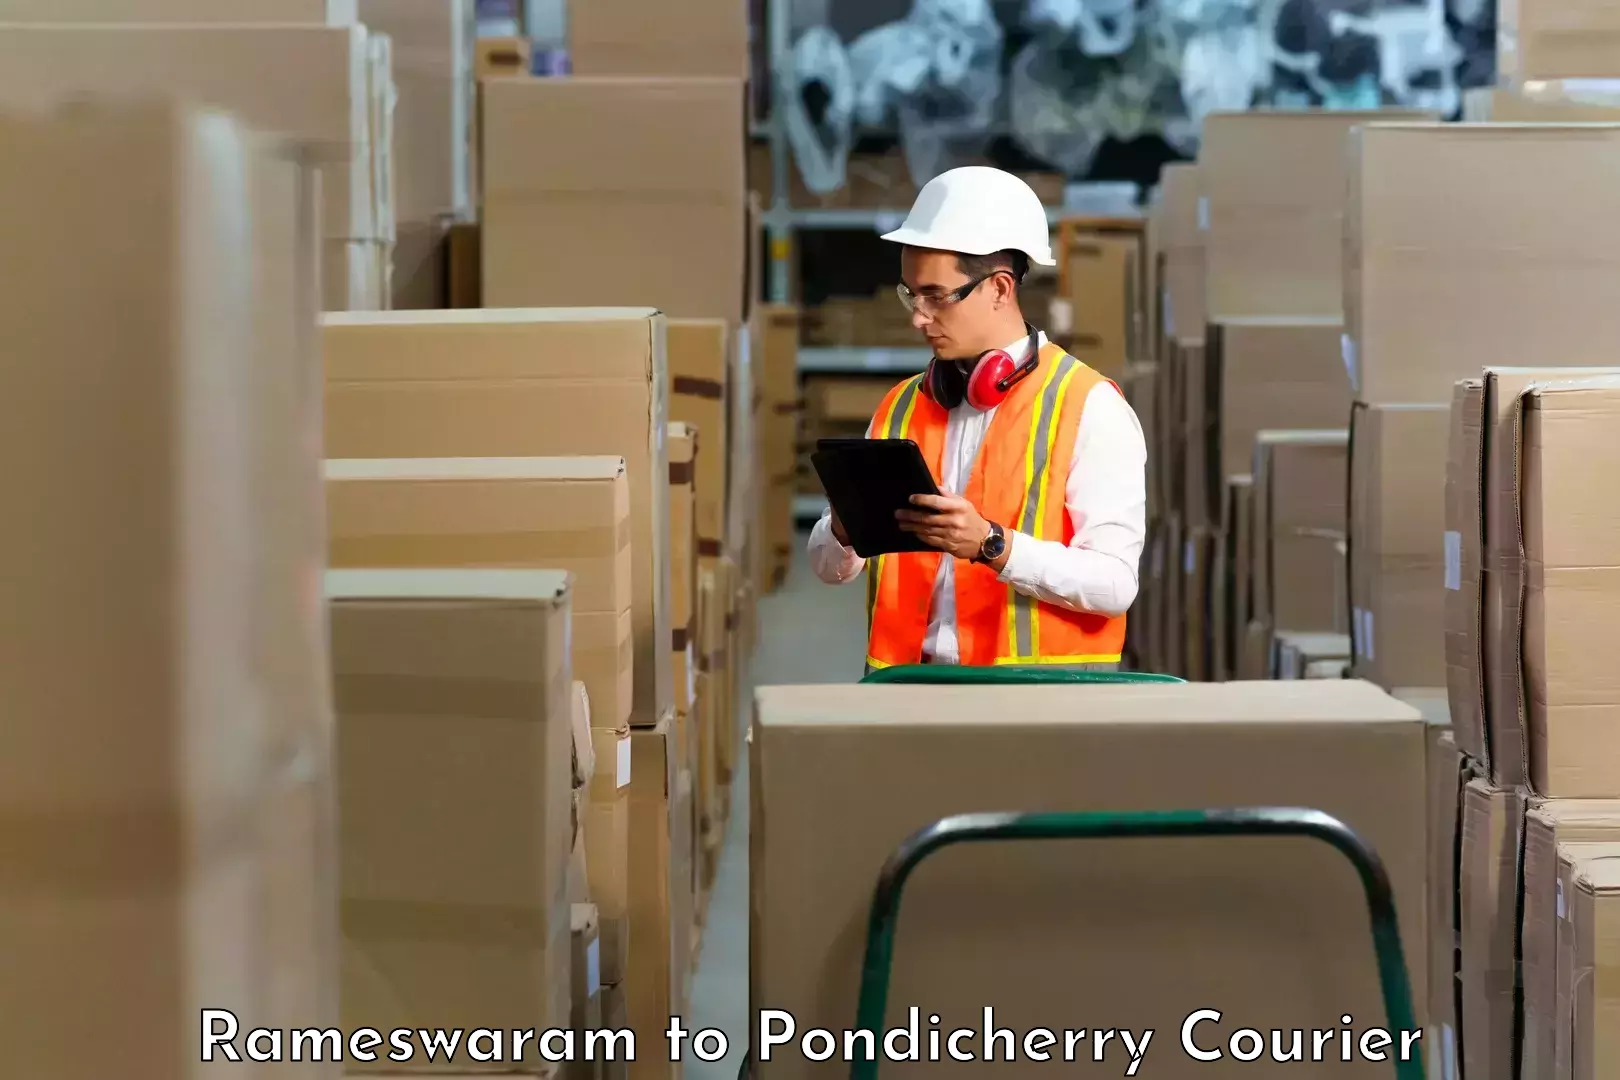 Professional courier handling Rameswaram to Pondicherry